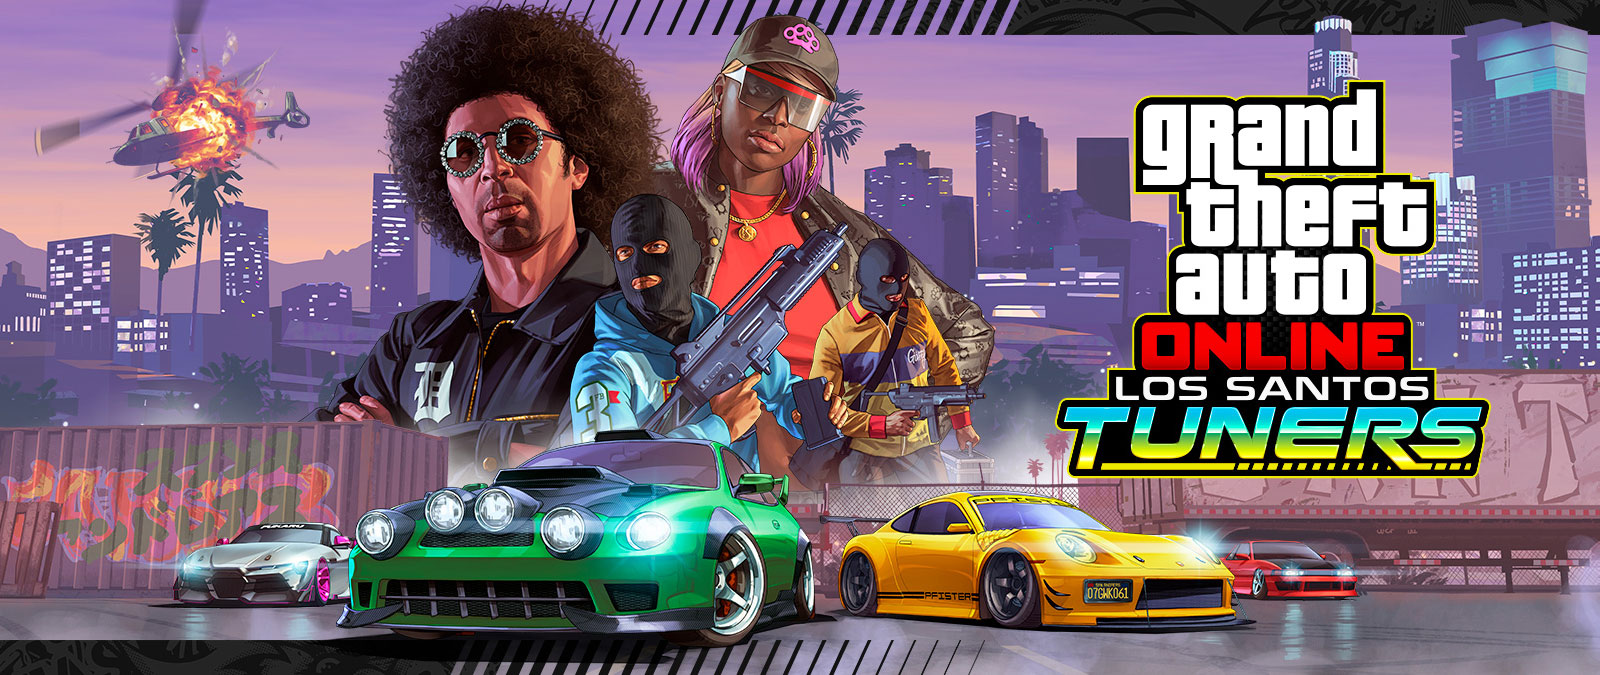 Grand Theft Auto Online, Tuning à Los Santos. Quatre personnages prennent la pose devant les gratte-ciels dʼune ville visibles au loin, au-dessus de quatre voitures de course. 